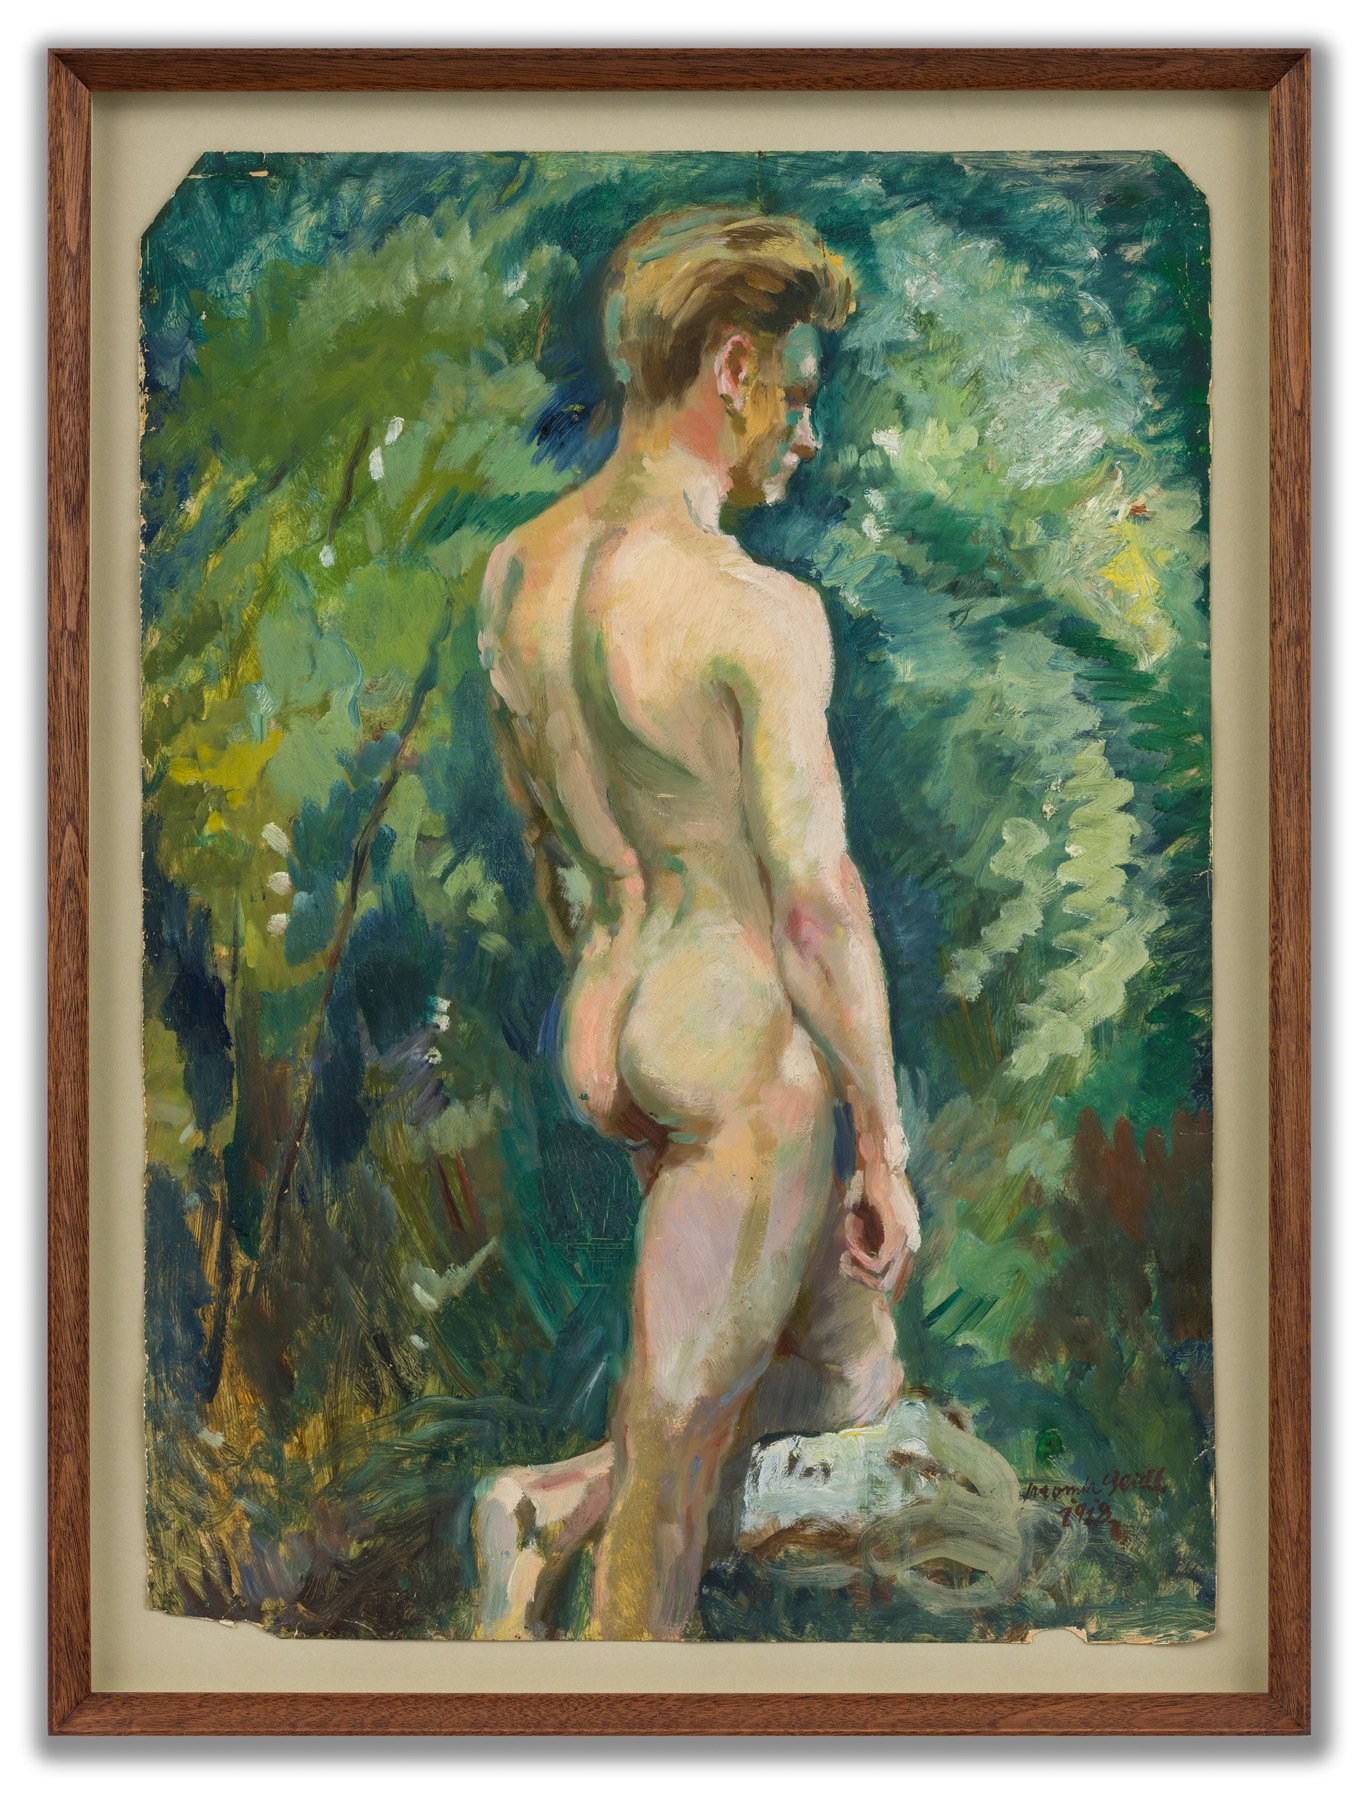 Jaromir Seidl, (Czech 1893-1968), Male Nude in a Landscape, 1918